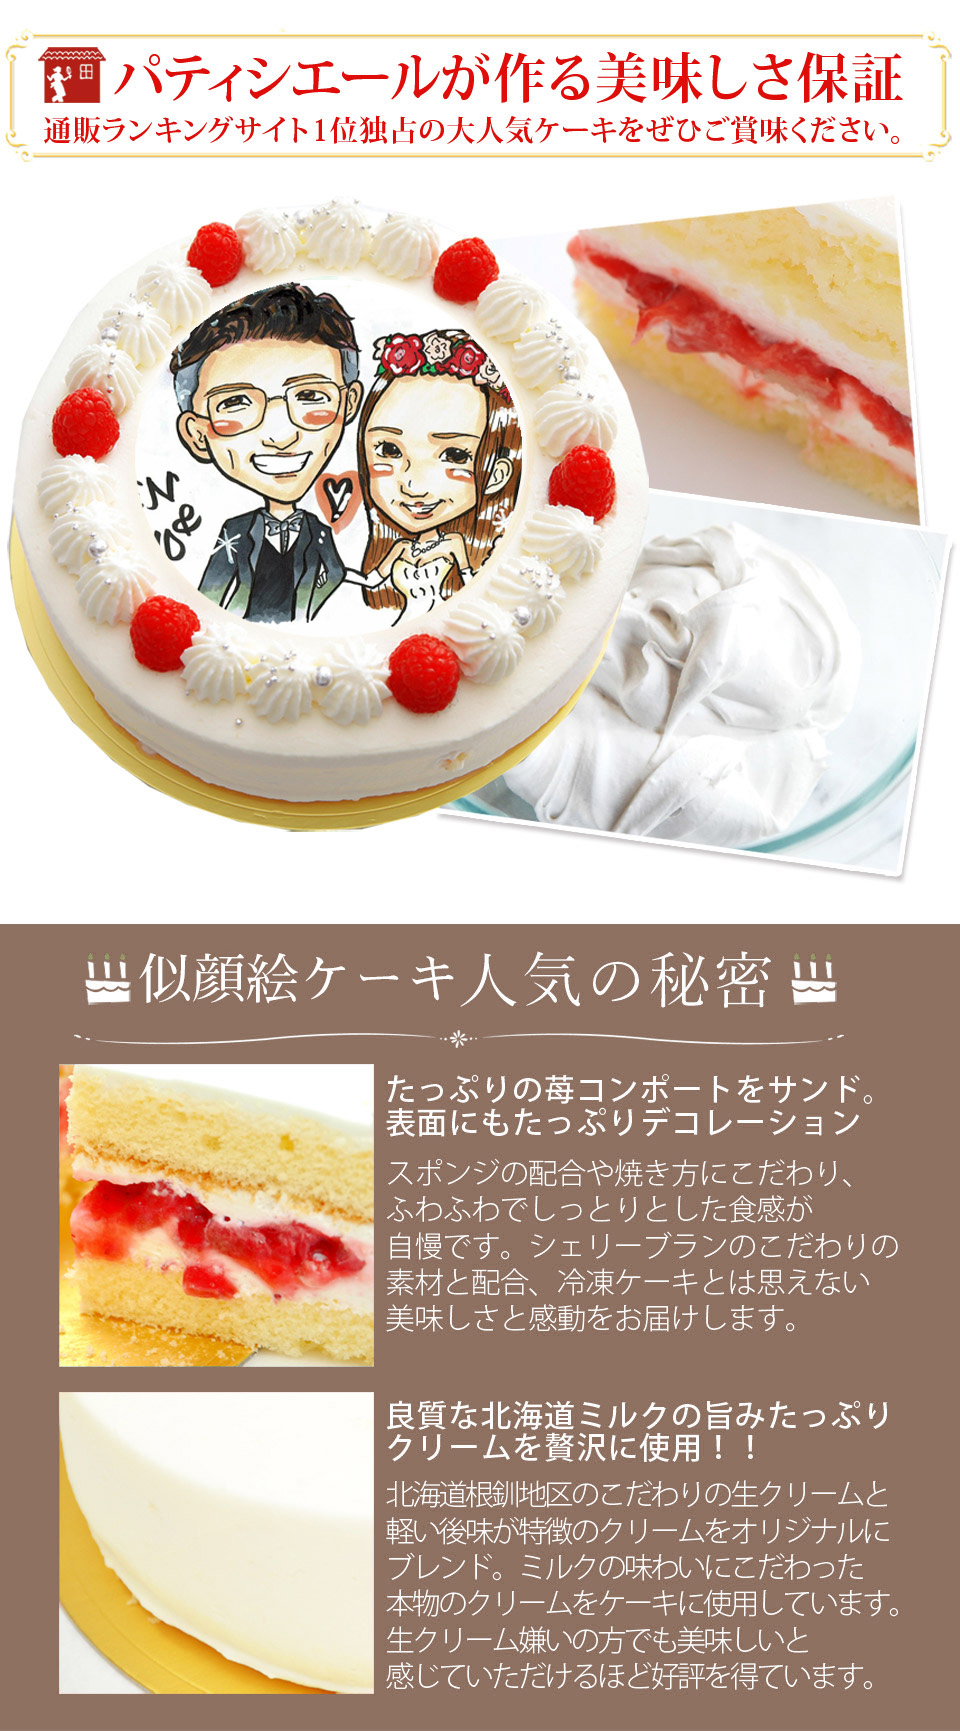 アラーム ポスト印象派 魅惑的な 似顔絵 ケーキ 通販 人気 Tsuchiyashika Jp